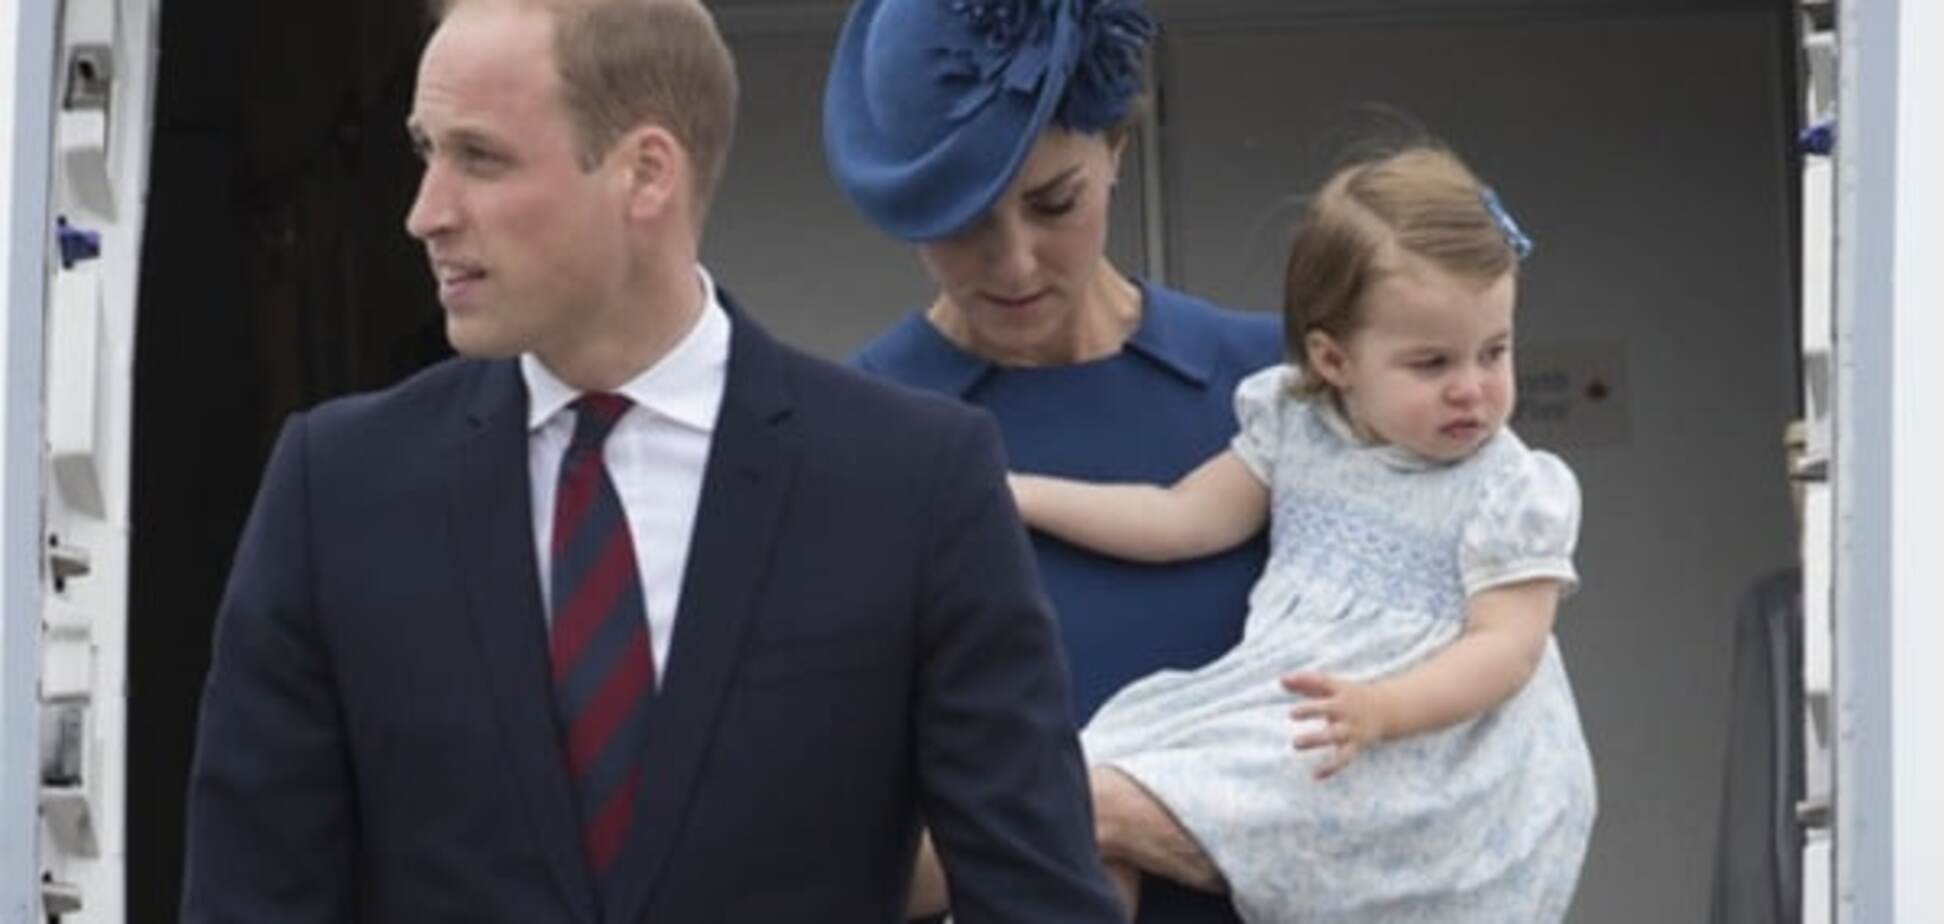 Вперше взяли дітей в офіційну поїздку: принц Вільям із дружиною прибули до Канади